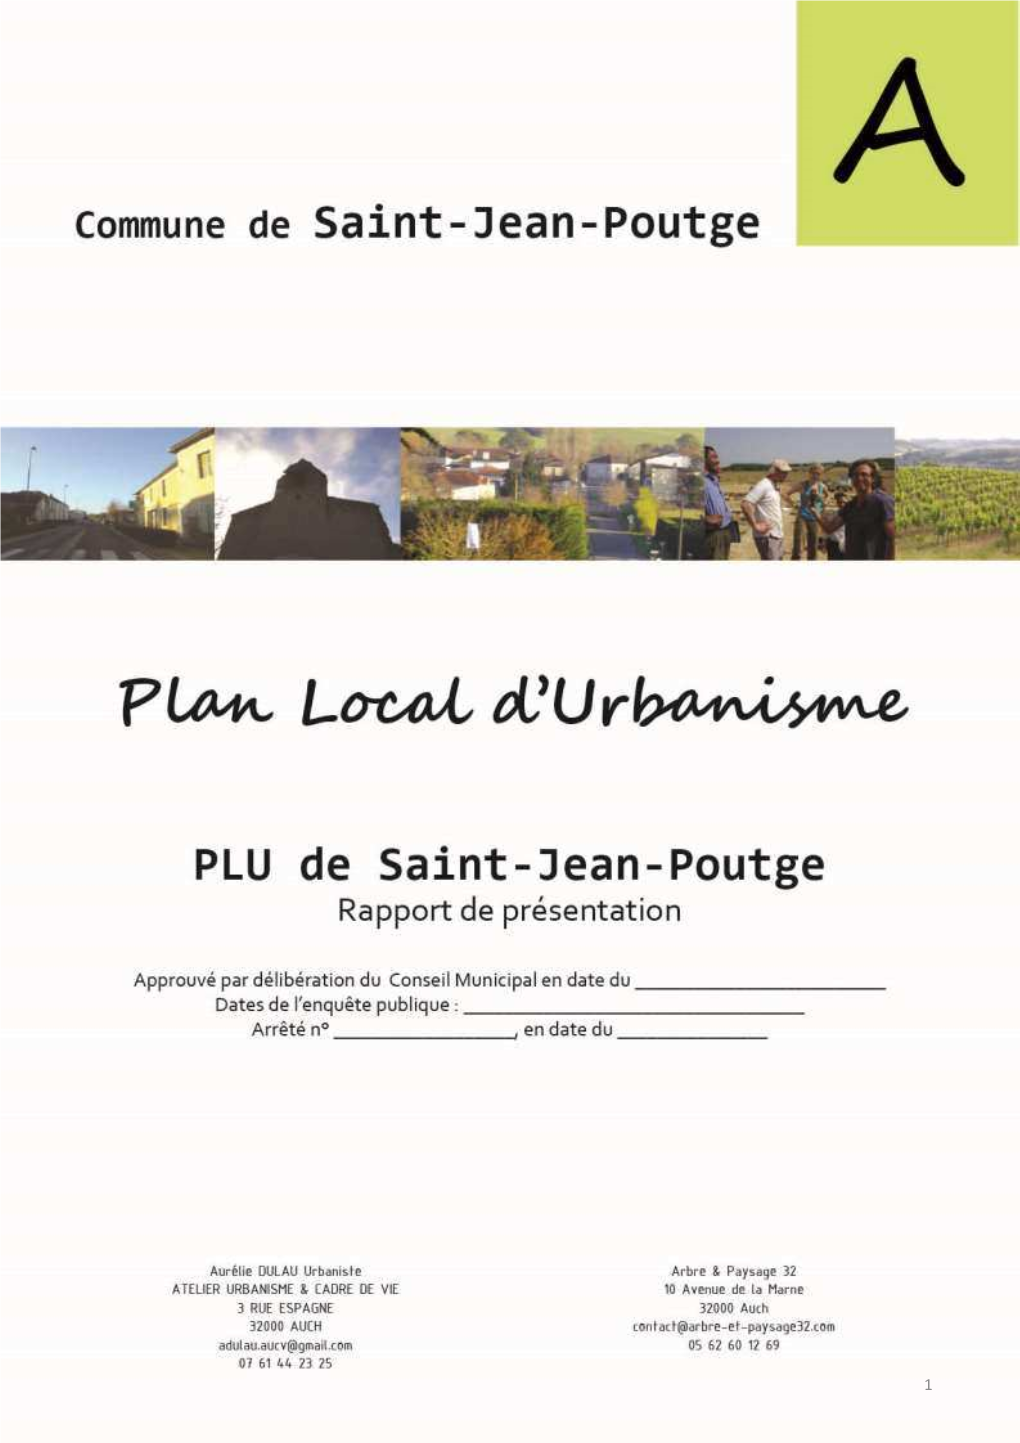 RP St Jean Poutge 03112016